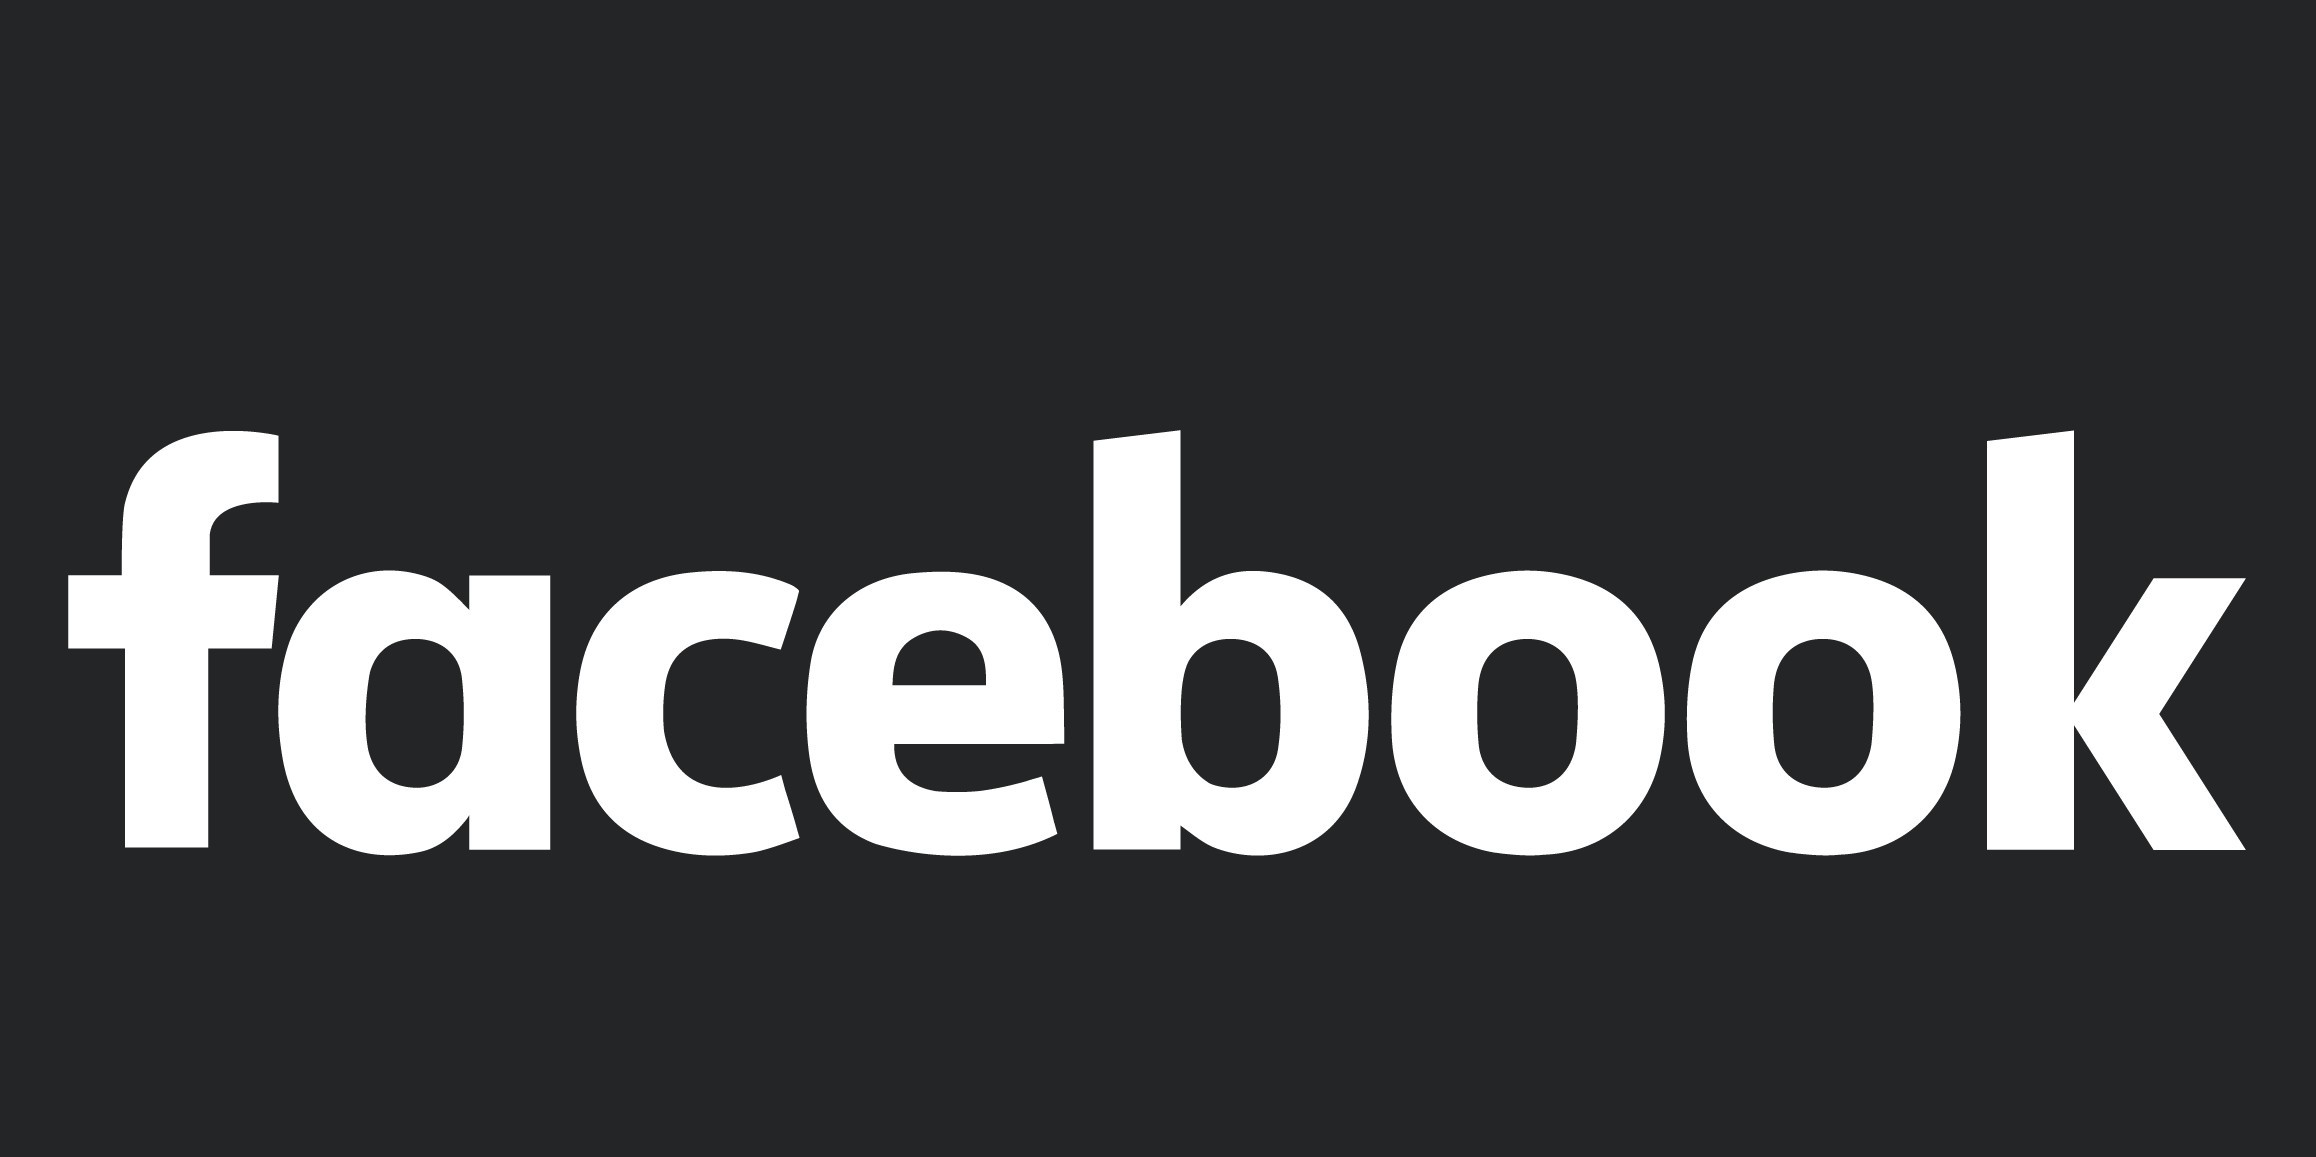 كيفية تفعيل الوضع المظلم على فيسبوك في ثوانٍ